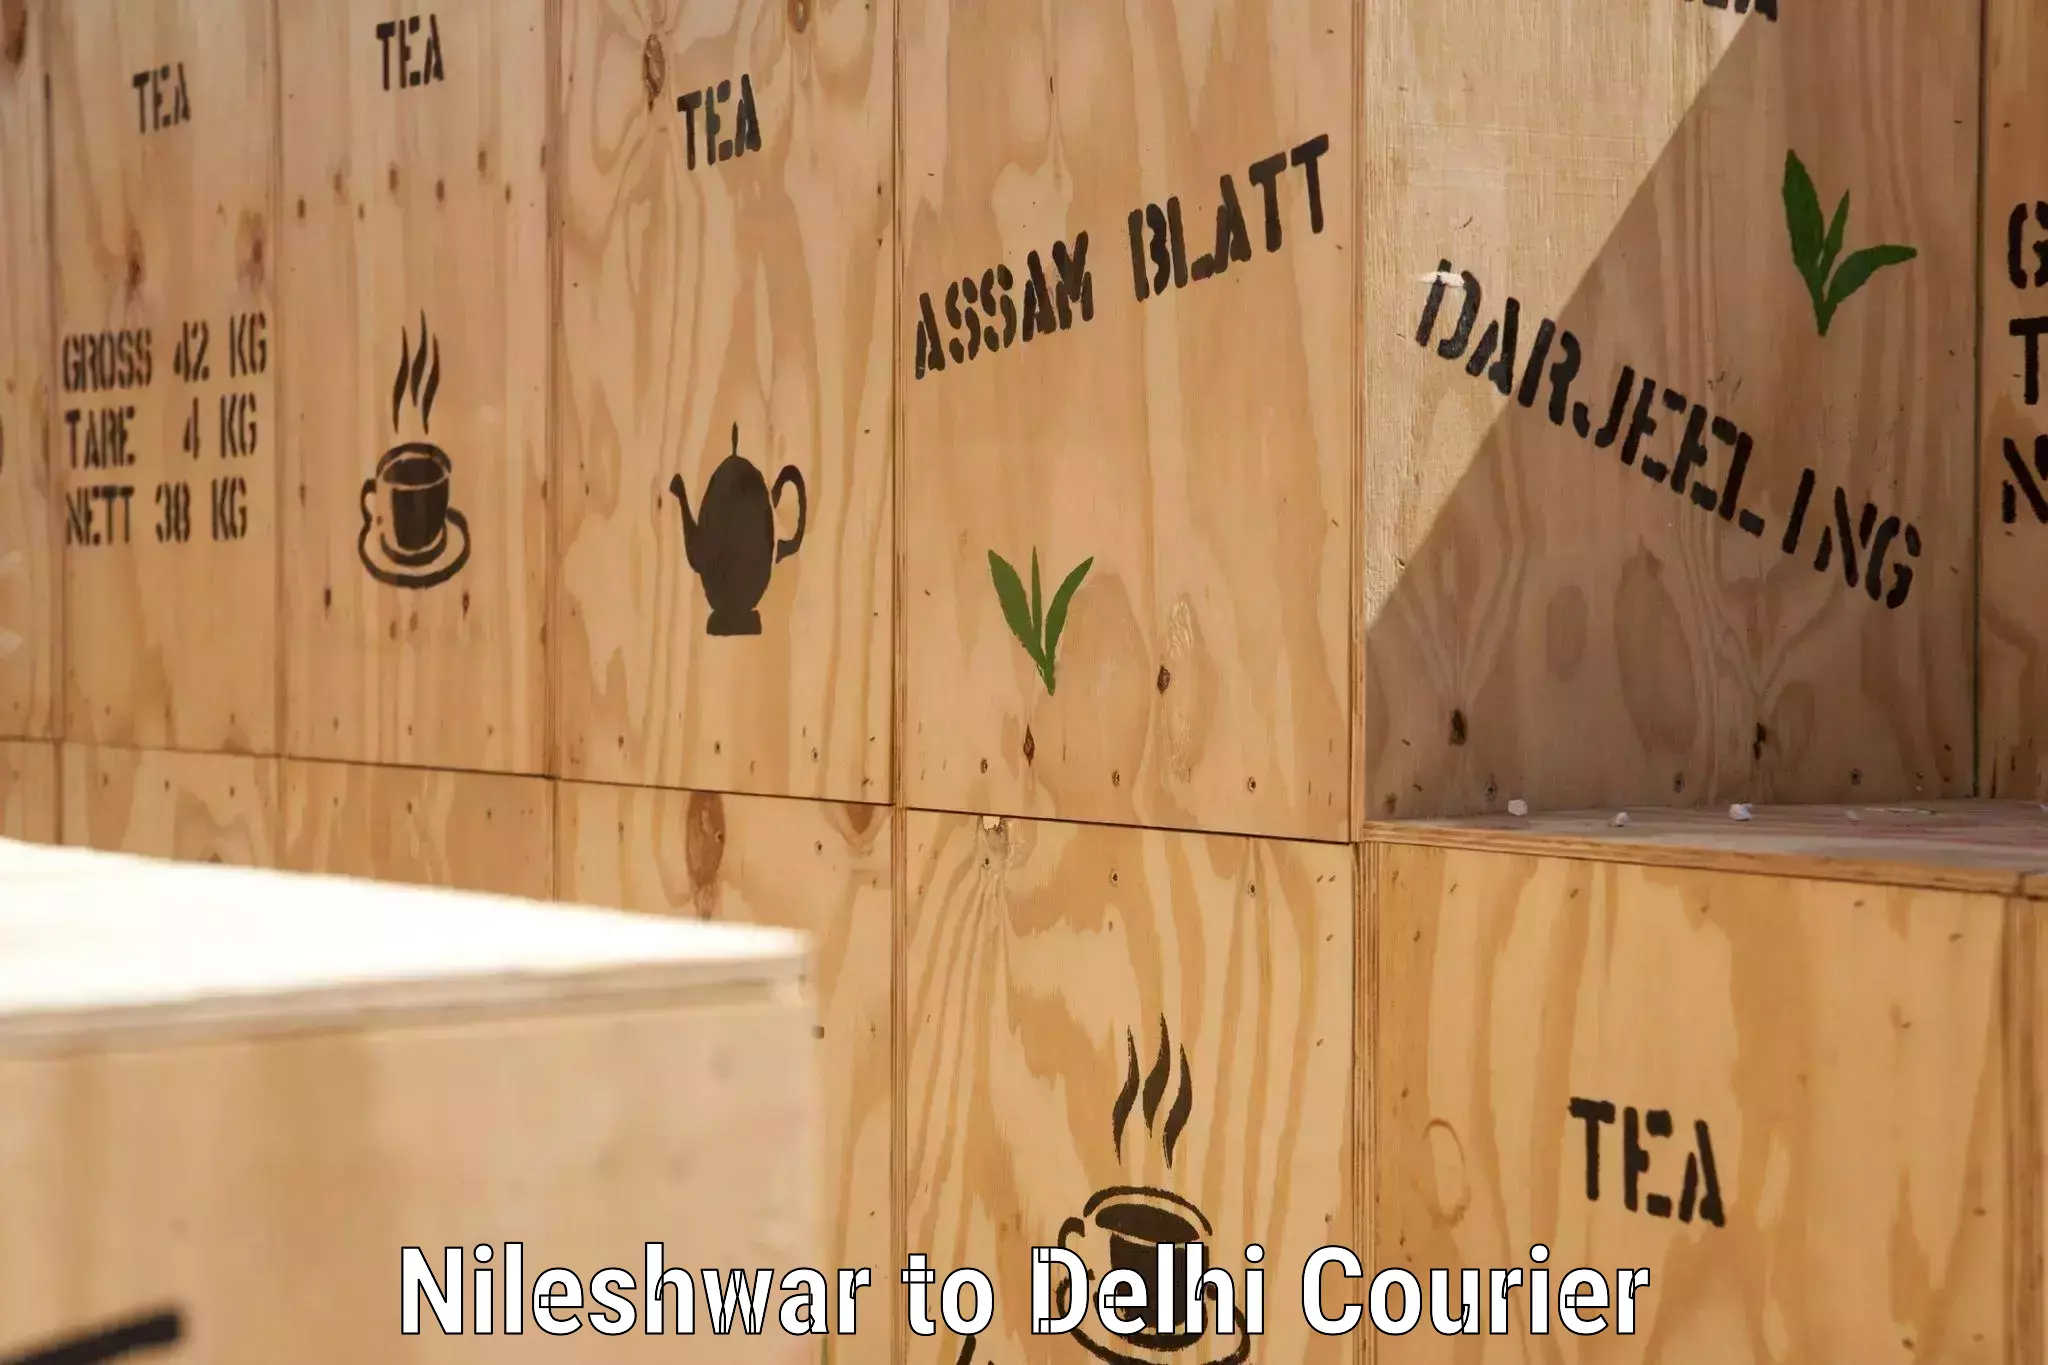 24-hour delivery options Nileshwar to Sarojini Nagar